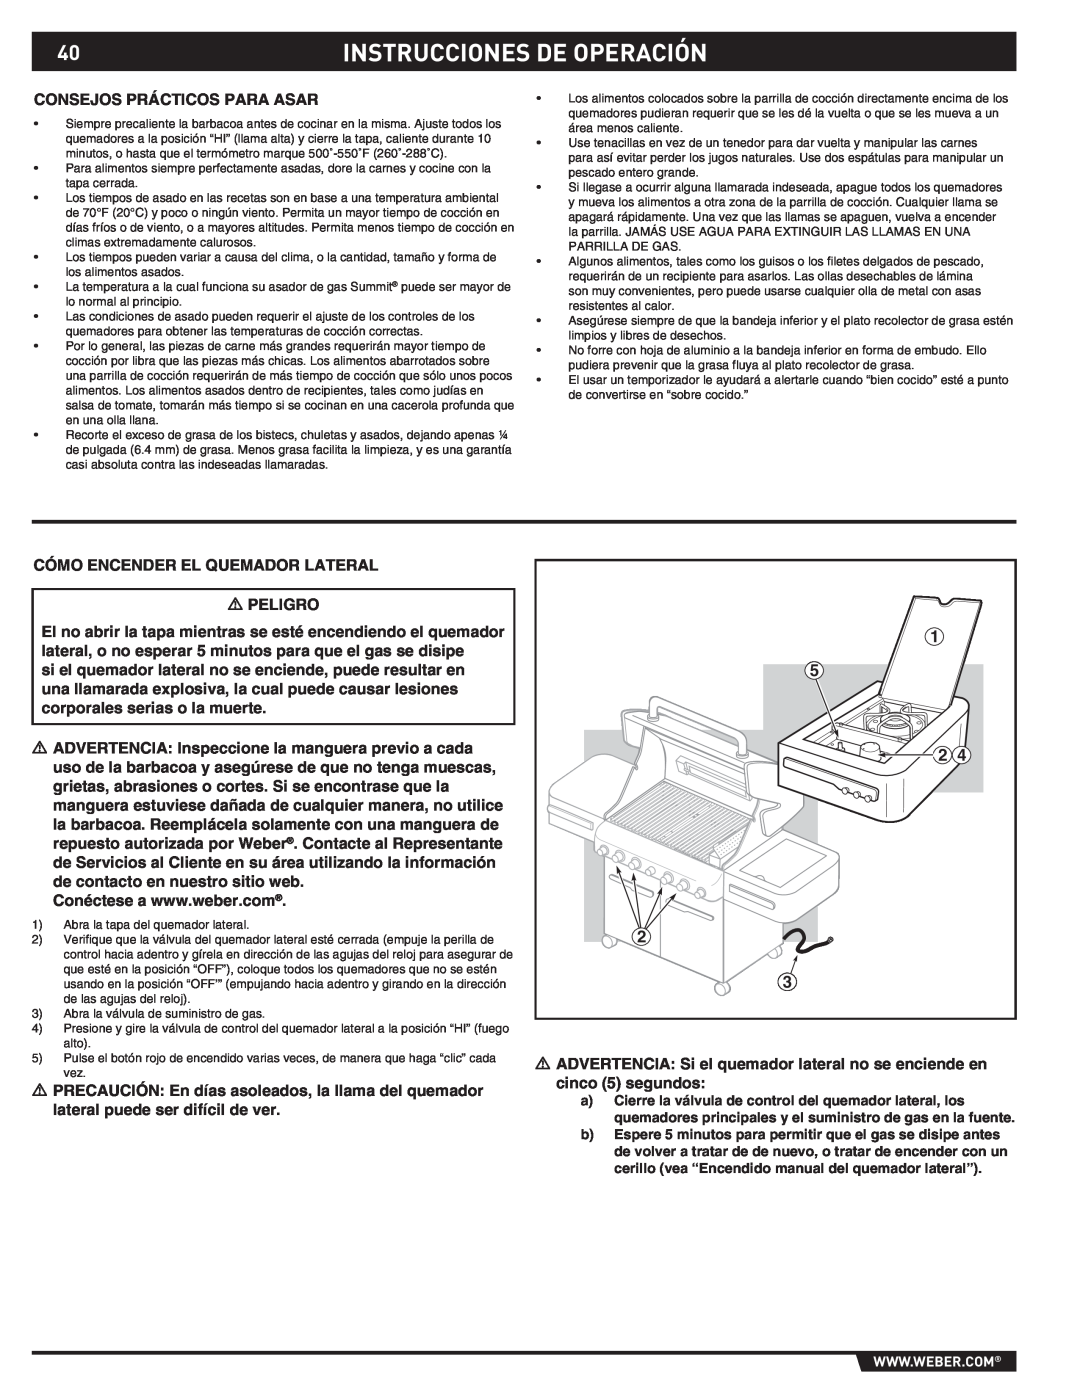 Weber S-470TM manual Instrucciones De Operación, Consejos Prácticos Para Asar 